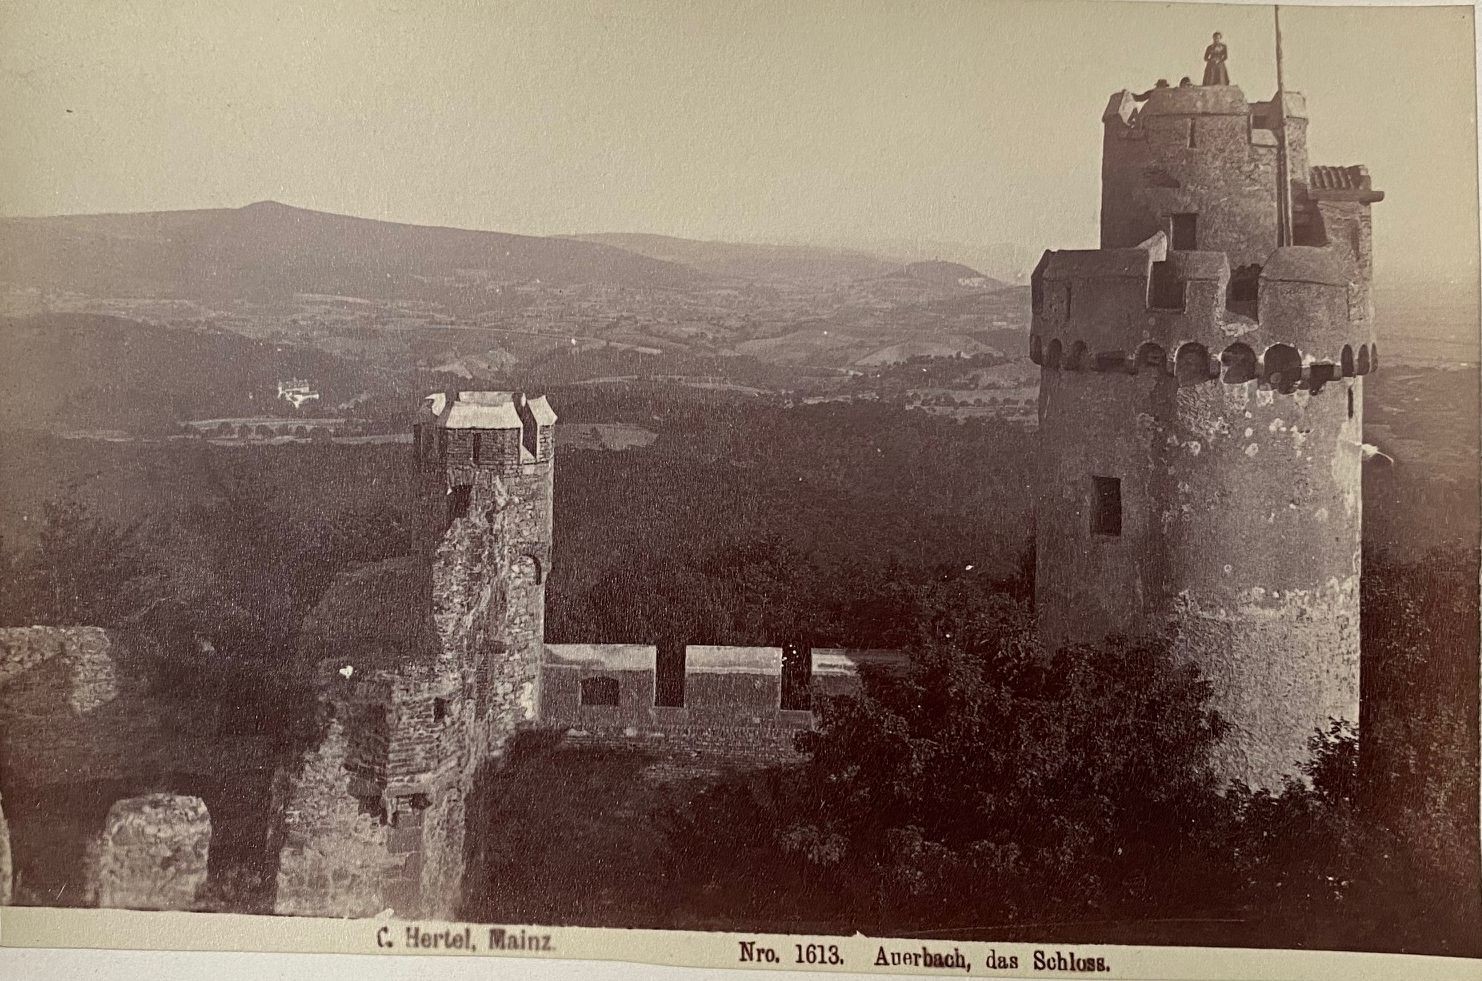 Fotografie, Carl Hertel No. 1613, Auerbach, das Schloss, ca. 1885 (Taunus-Rhein-Main - Regionalgeschichtliche Sammlung Dr. Stefan Naas CC BY-NC-SA)